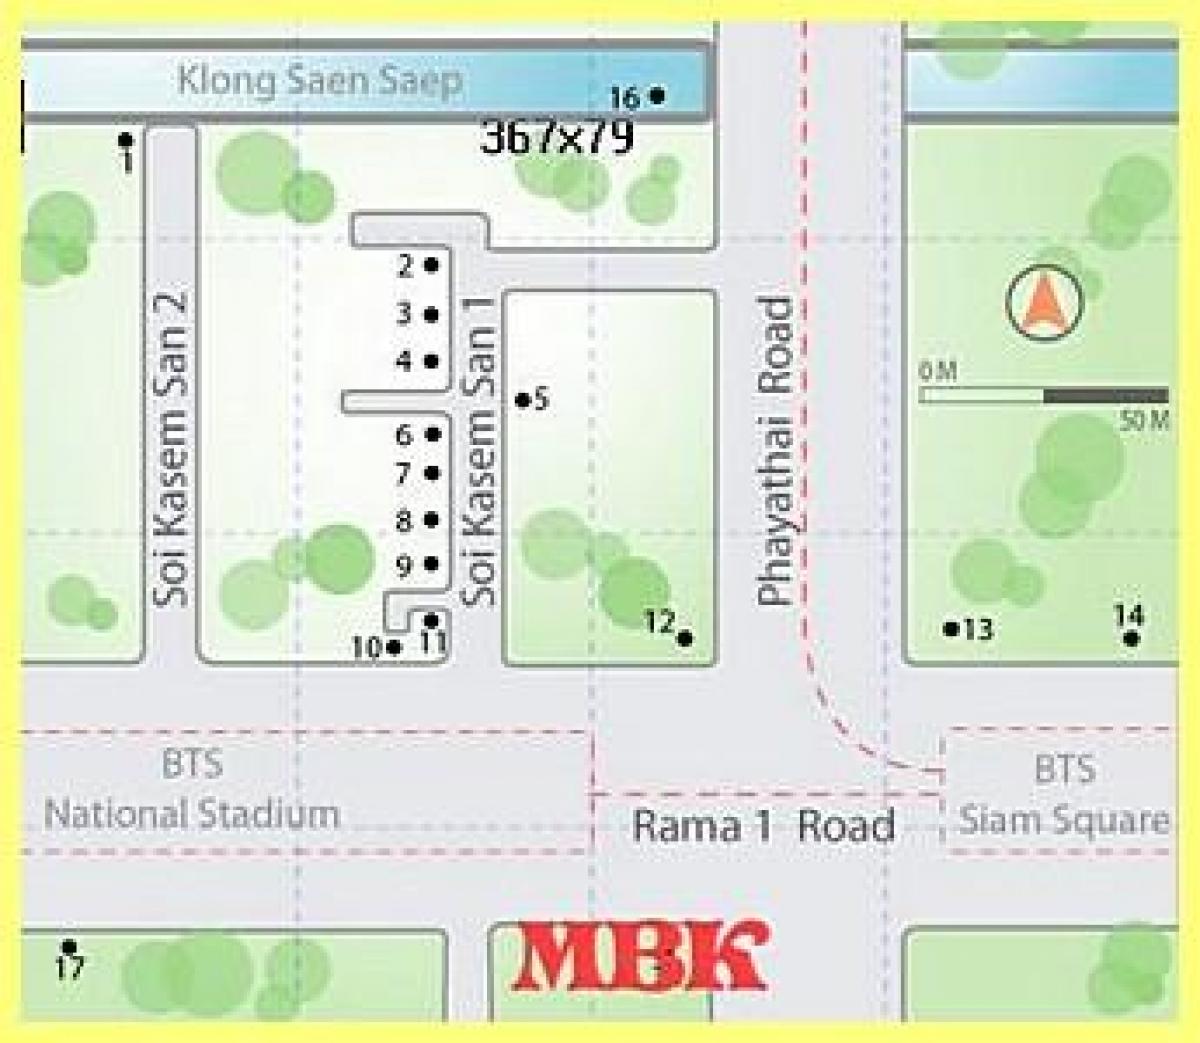 mbk ซื้อของห้างในแผนที่กรุงเทพมหานคร world. kgm